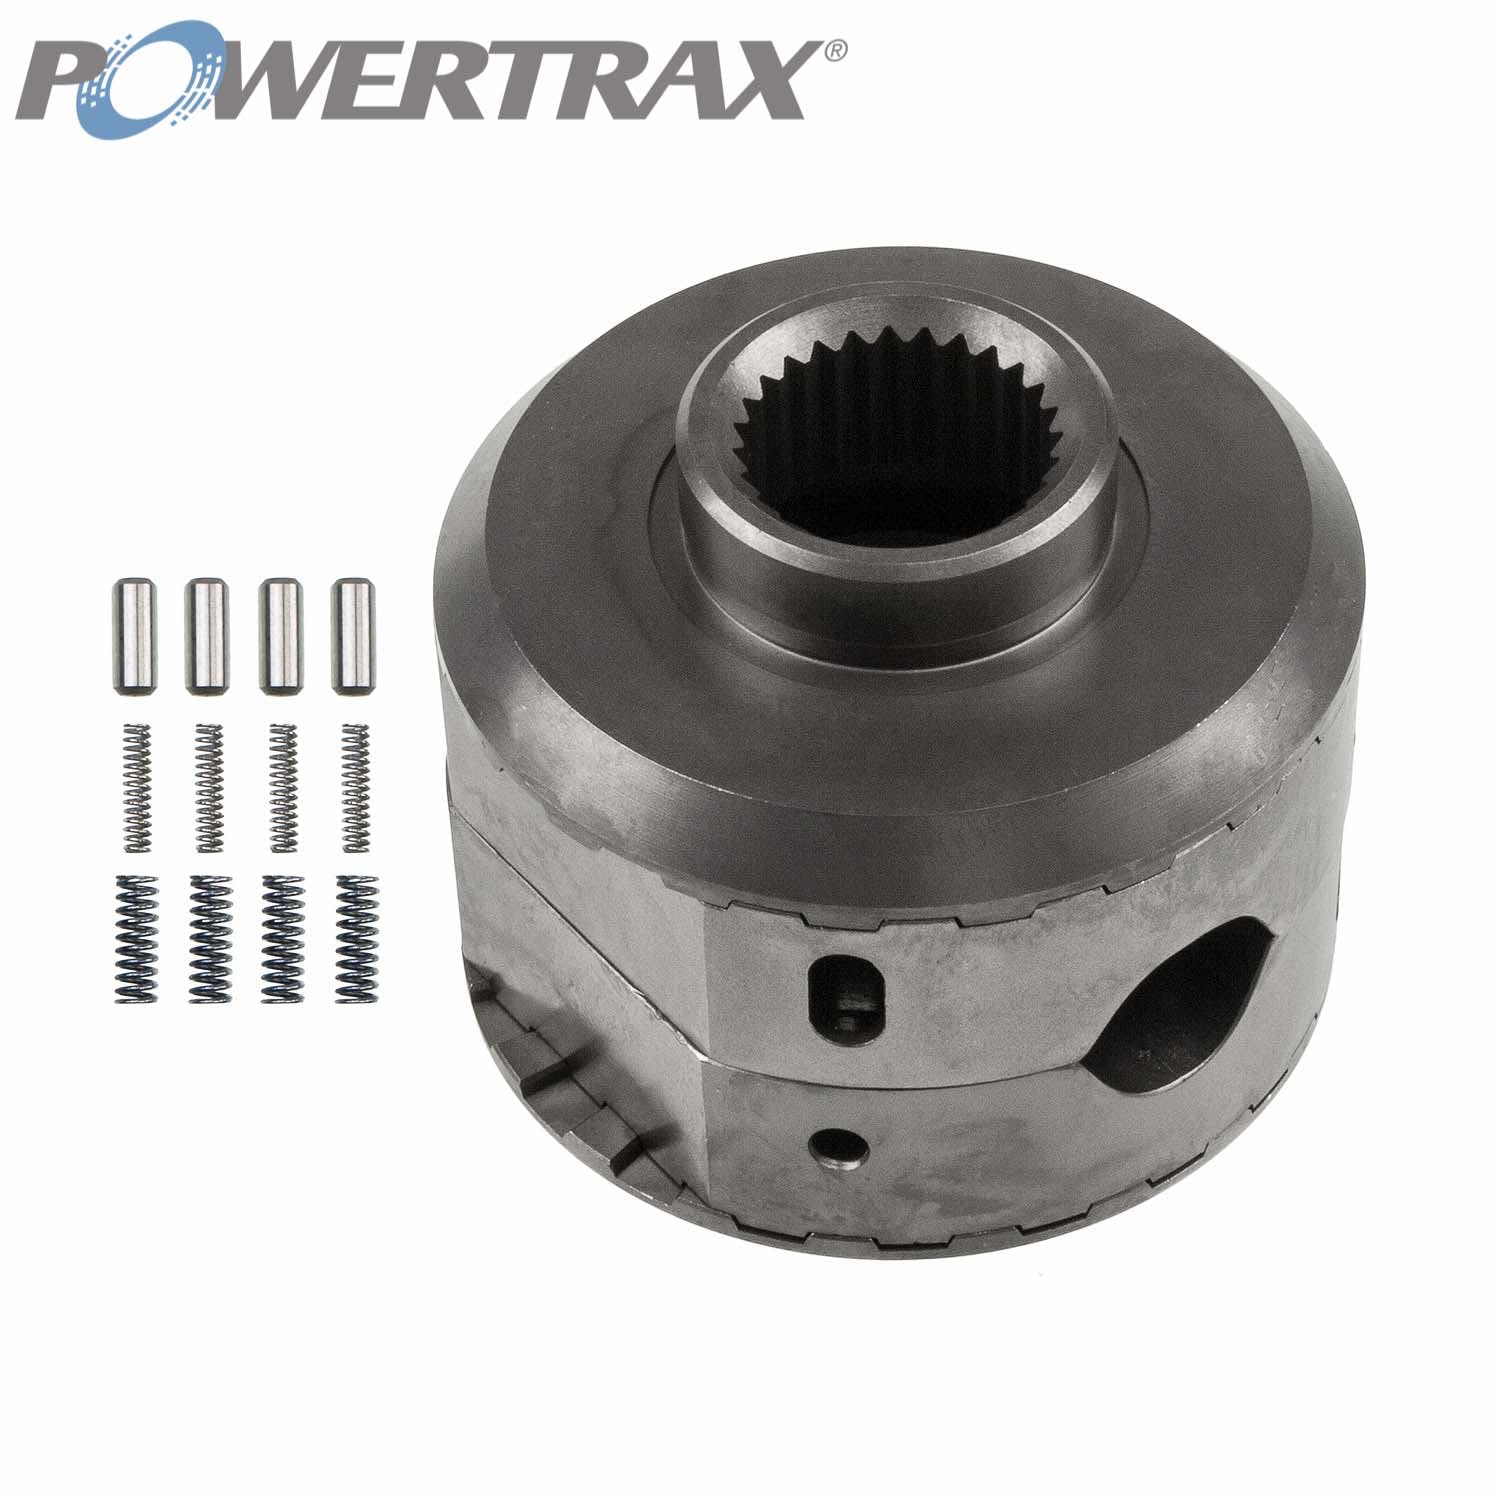 PowerTrax 1611-LR Lock Right Locker